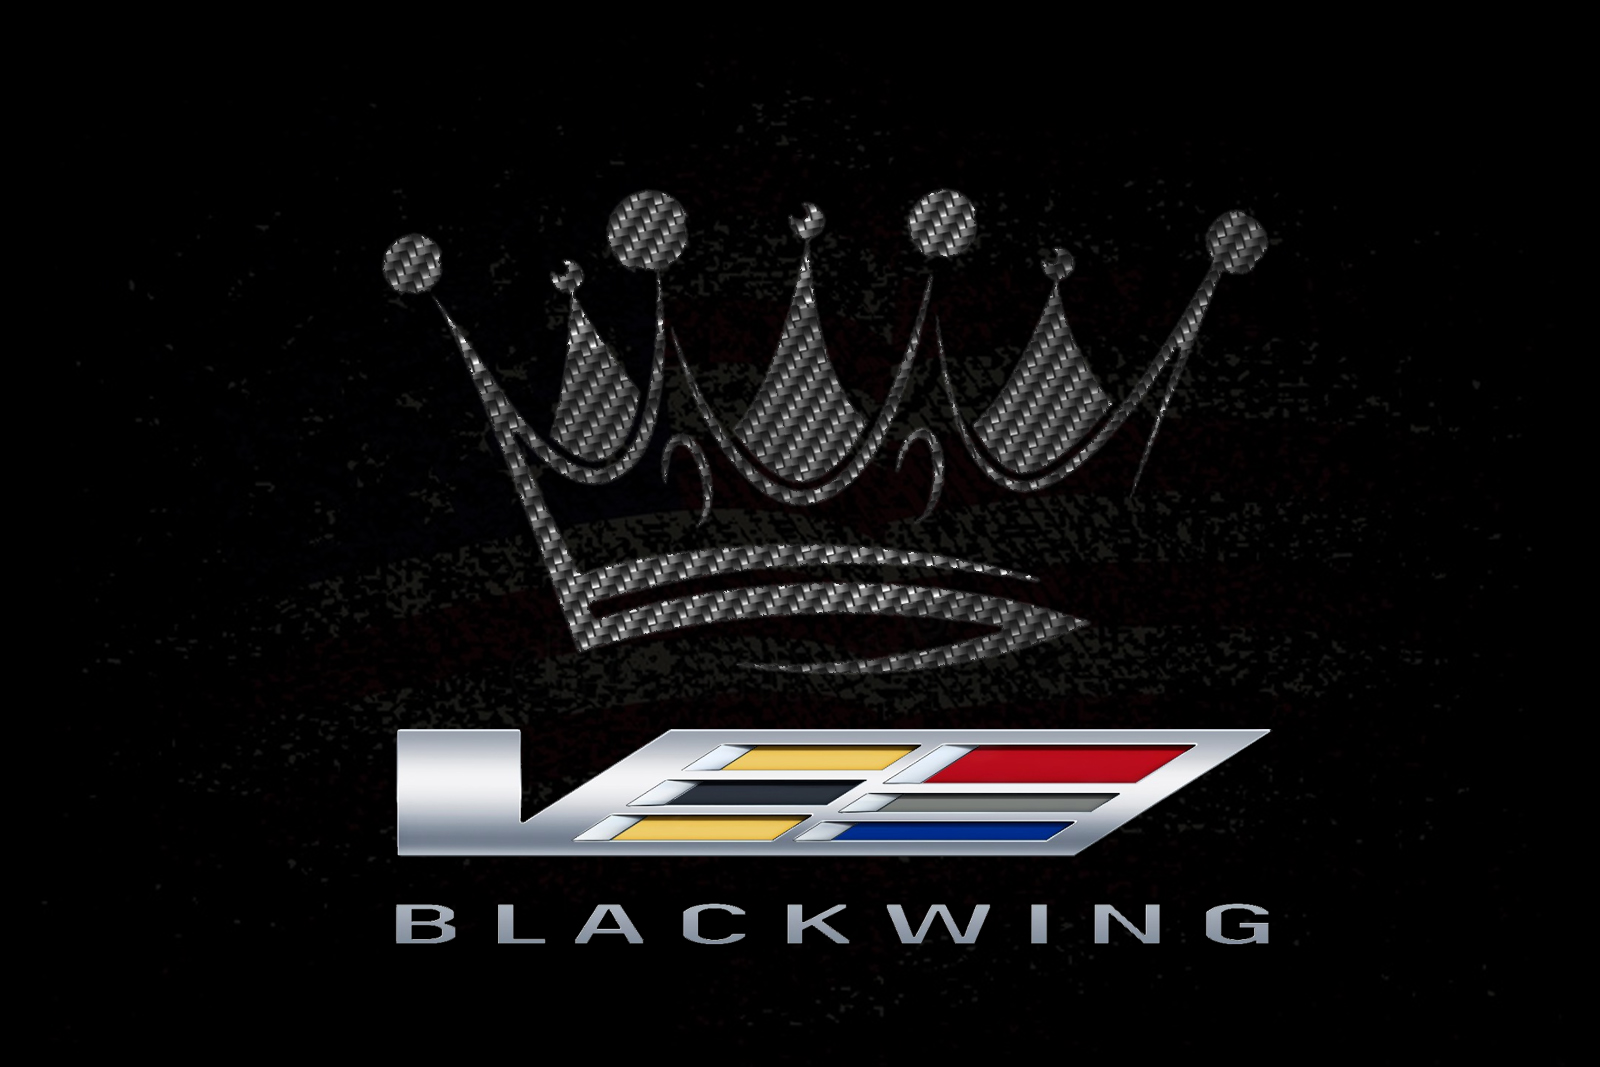 001_Blackwing_King_Logo.jpg